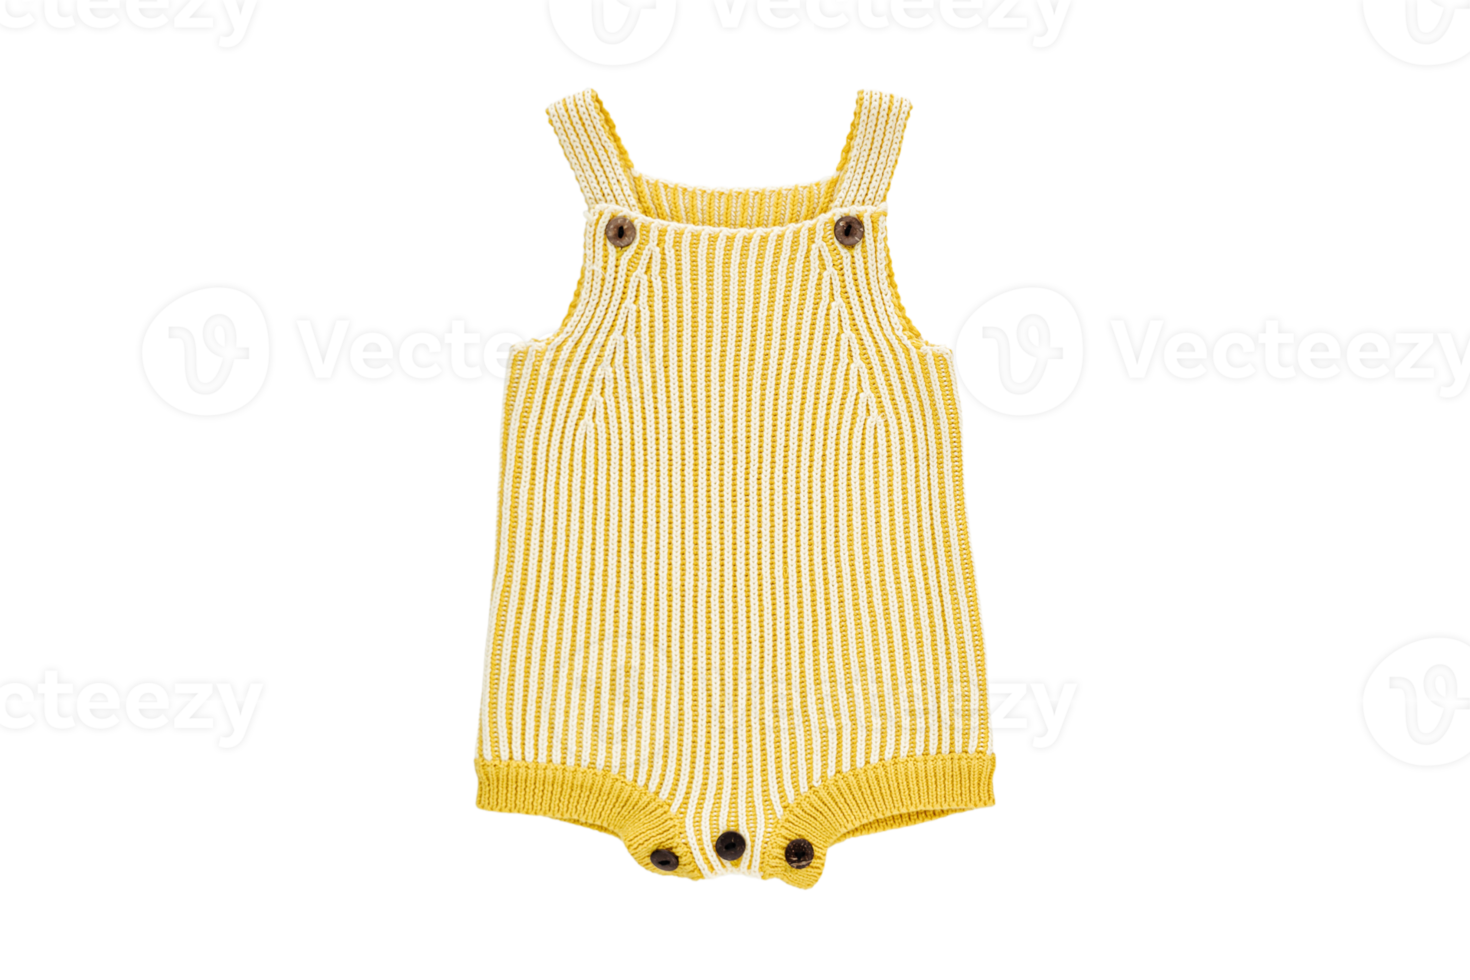 geel babay kleding geïsoleerd Aan een transparant achtergrond png